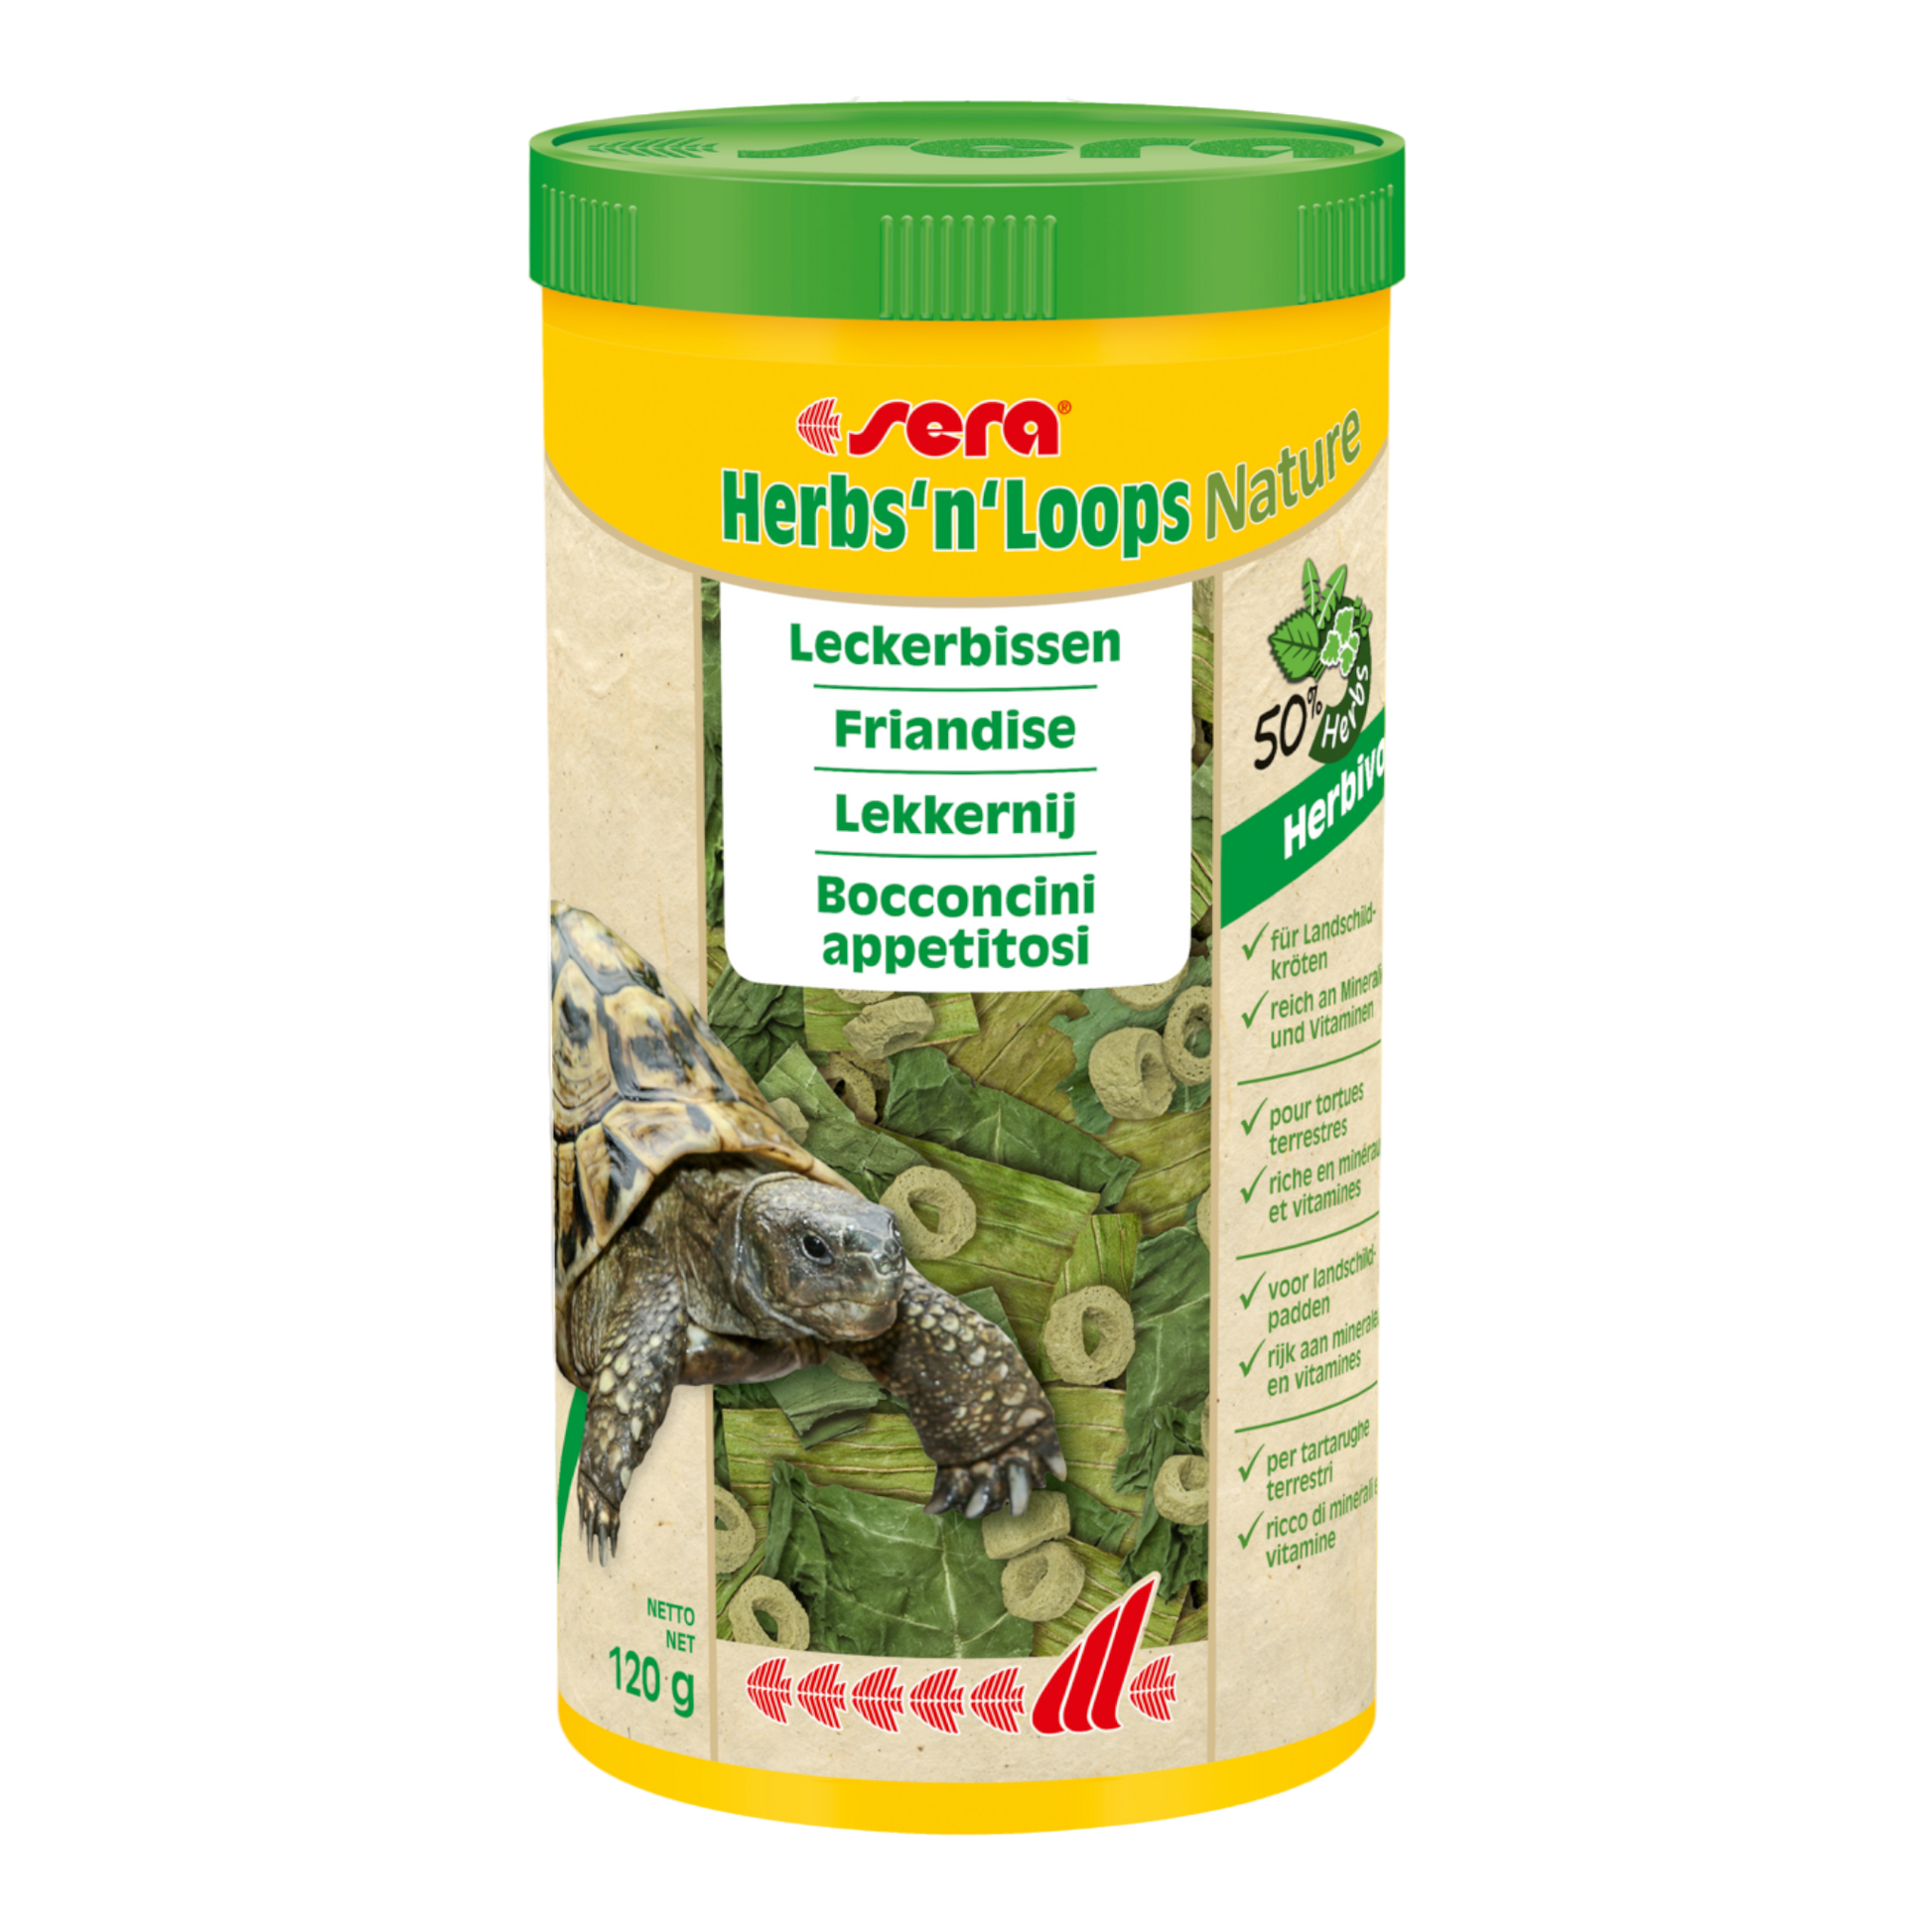 sera Herbs'n'Loops Nature ist der Leckerbissen ohne Farb- und Konservierungsstoffe aus einer Mischung von getrockneten Kräutern (50 %) und schonend hergestellten Loops für Landschildkröten und andere herbivore Reptilien.